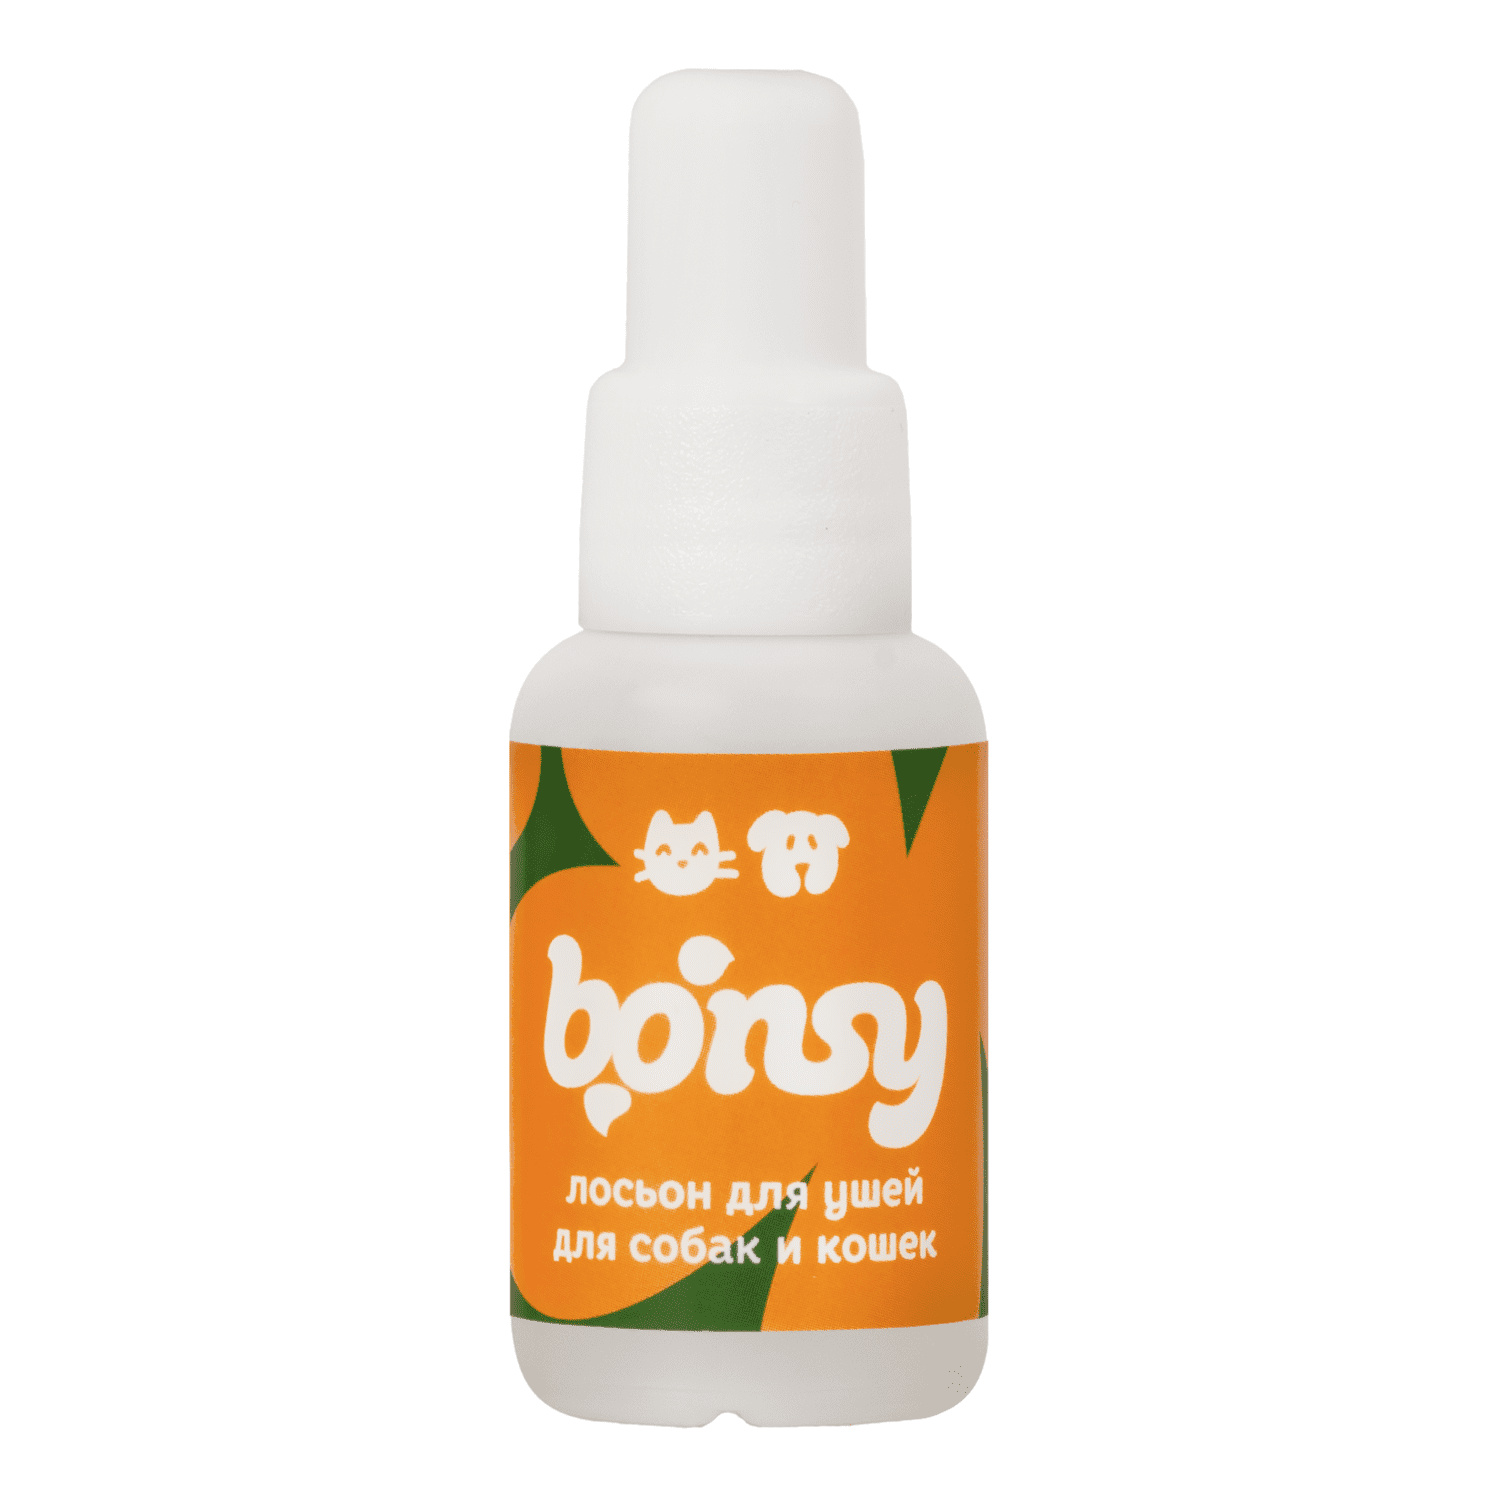 Bonsy Bonsy лосьон для очистки ушей кошек и собак (30 г) лосьон пчелодар ушастик для очистки ушей собак и кошек 50 мл